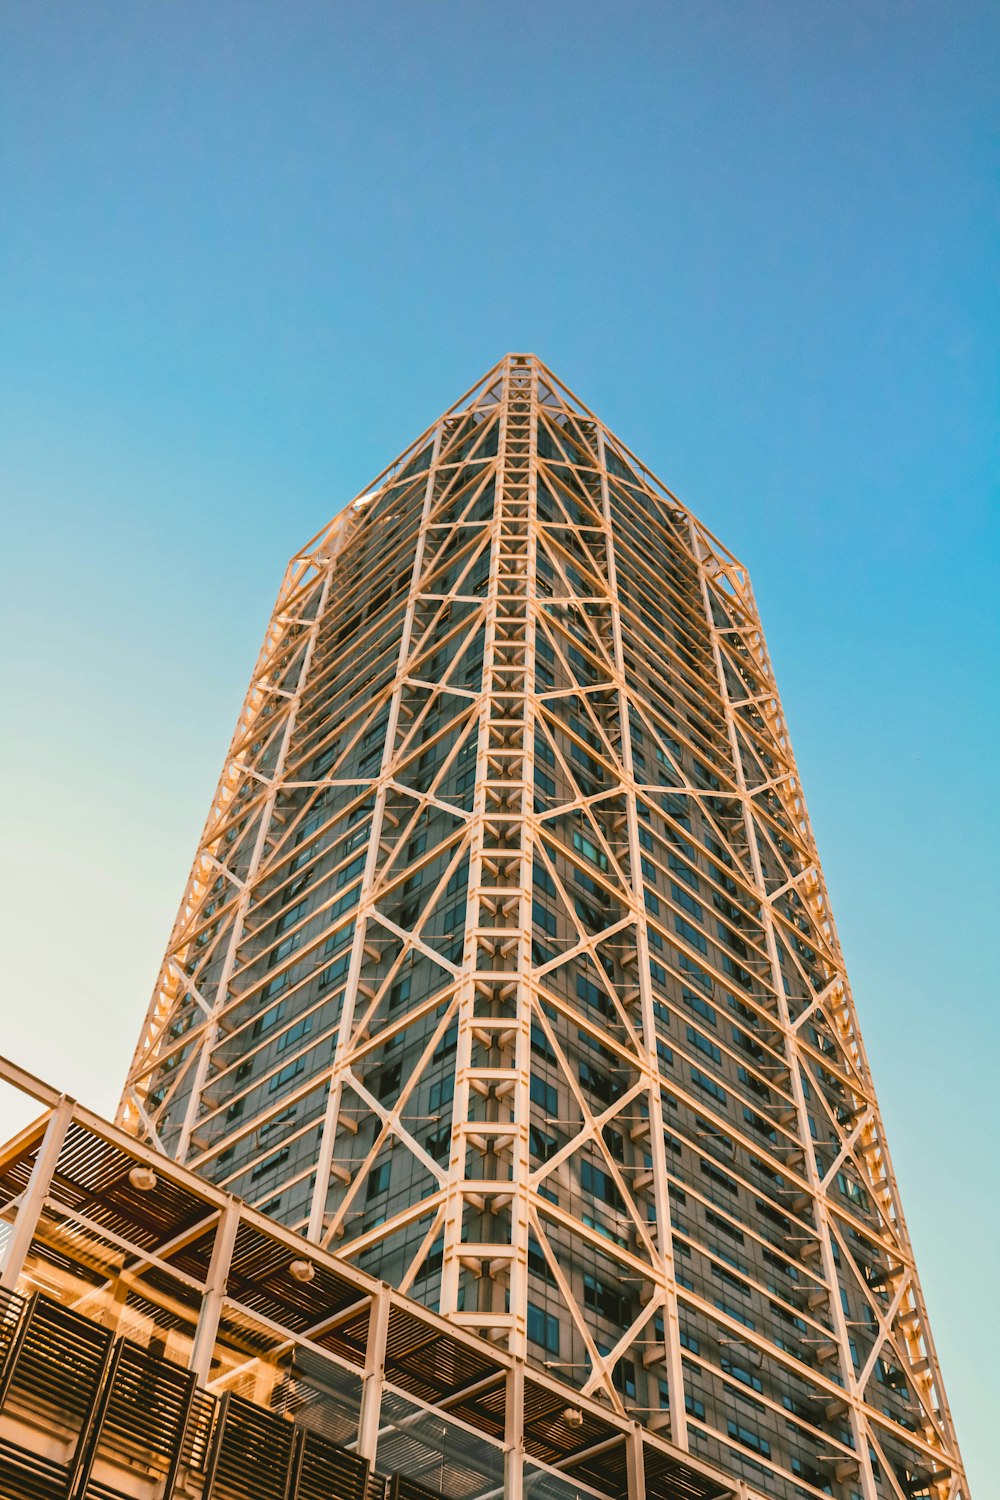 Fotografía de vista de gusano de un edificio de gran altura de hormigón marrón